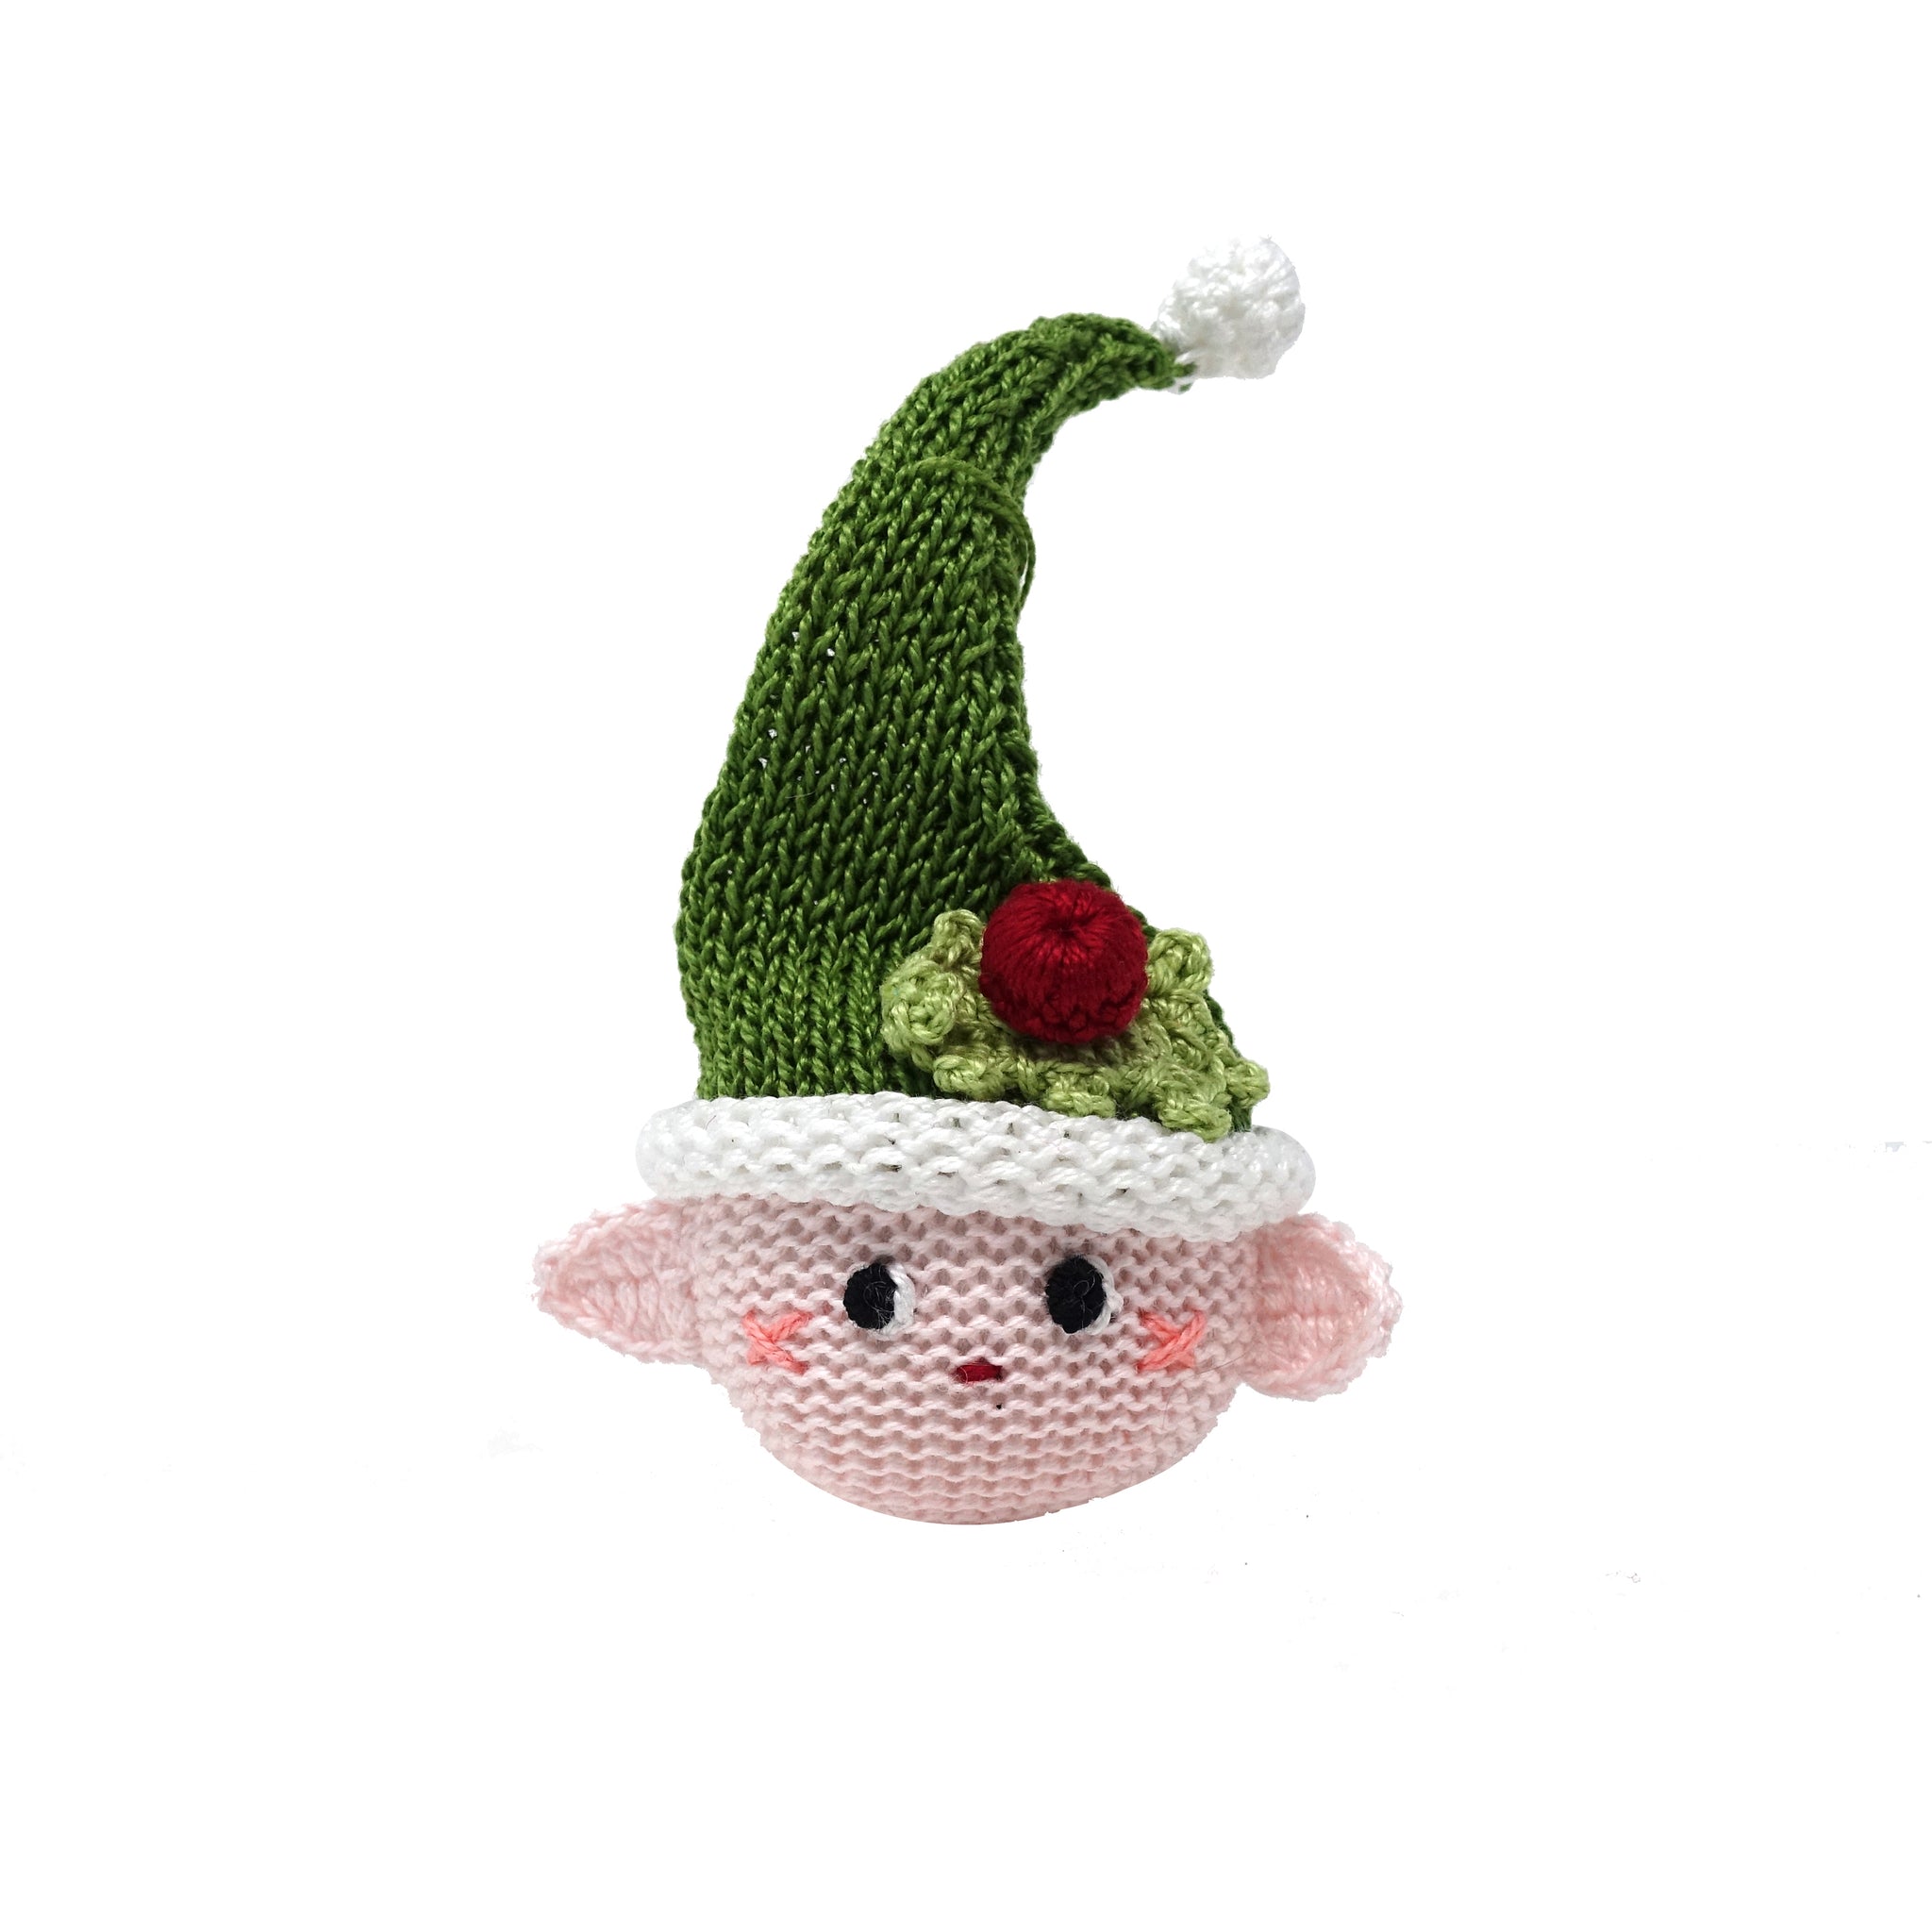 Crochet Elf Ornament